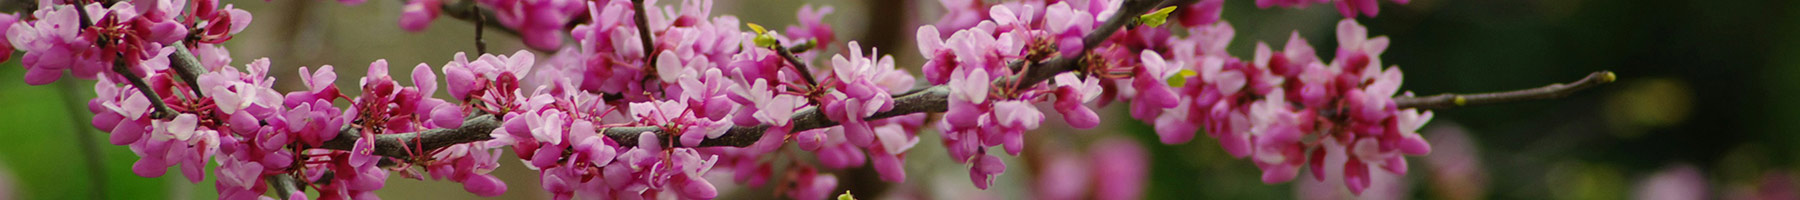 a flowering tree